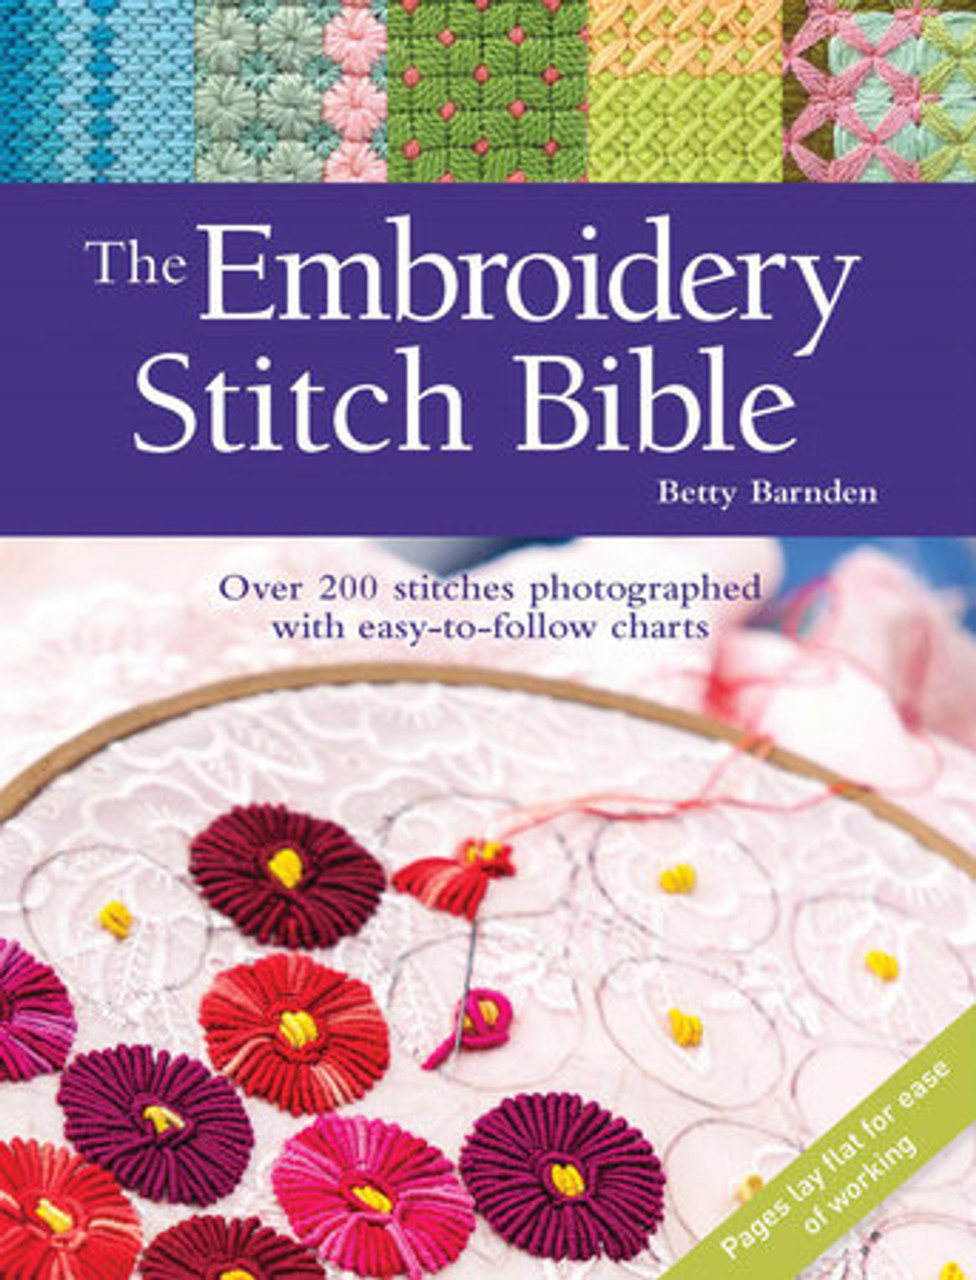 Stick & Stitch Embroidery Pattern